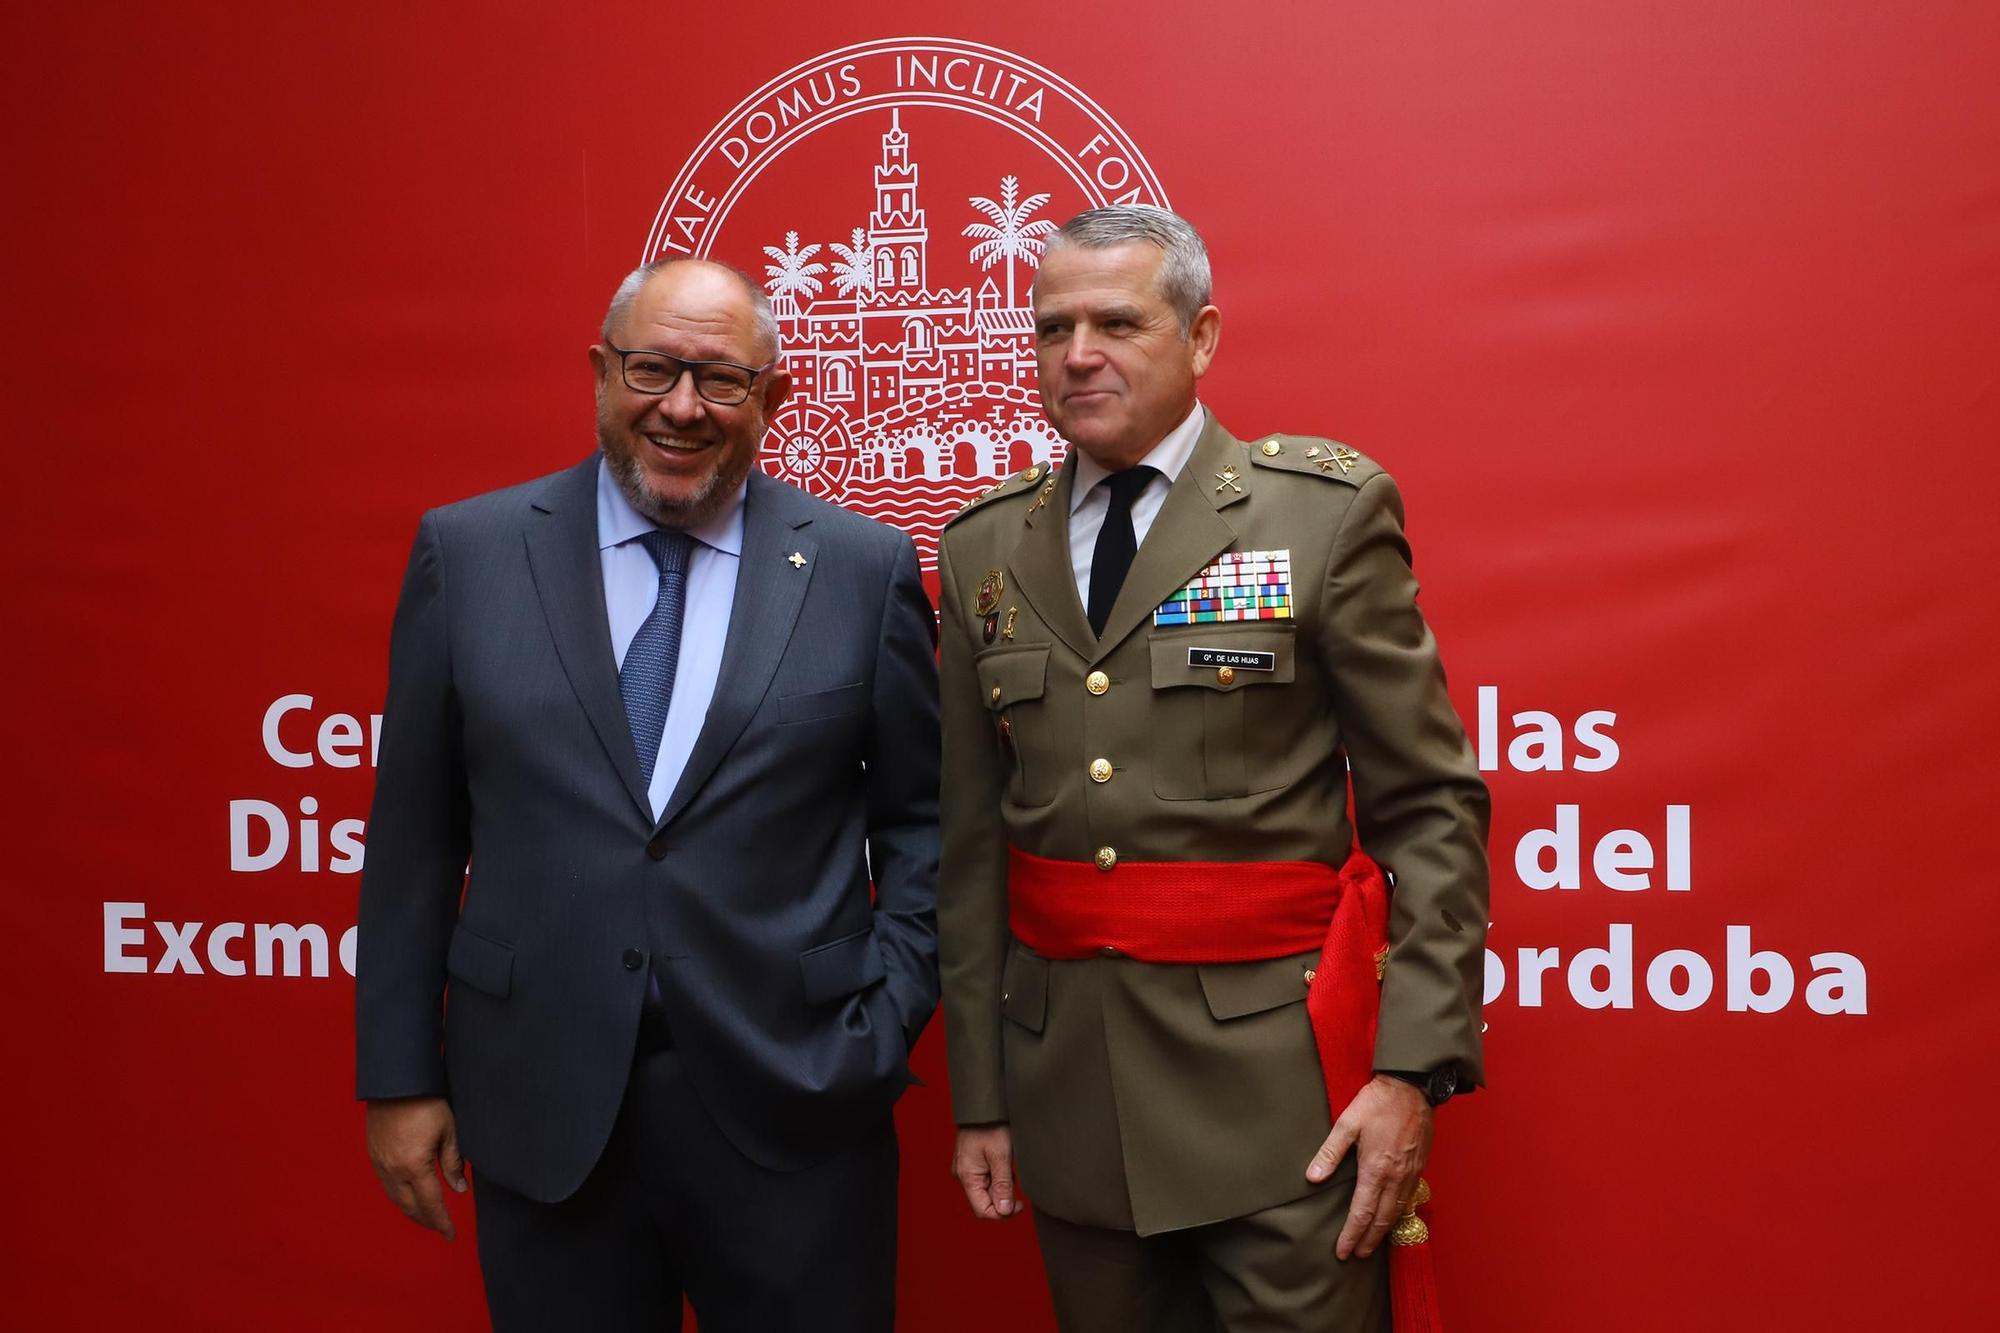 La entrega de las Medallas de Córdoba, en imágenes